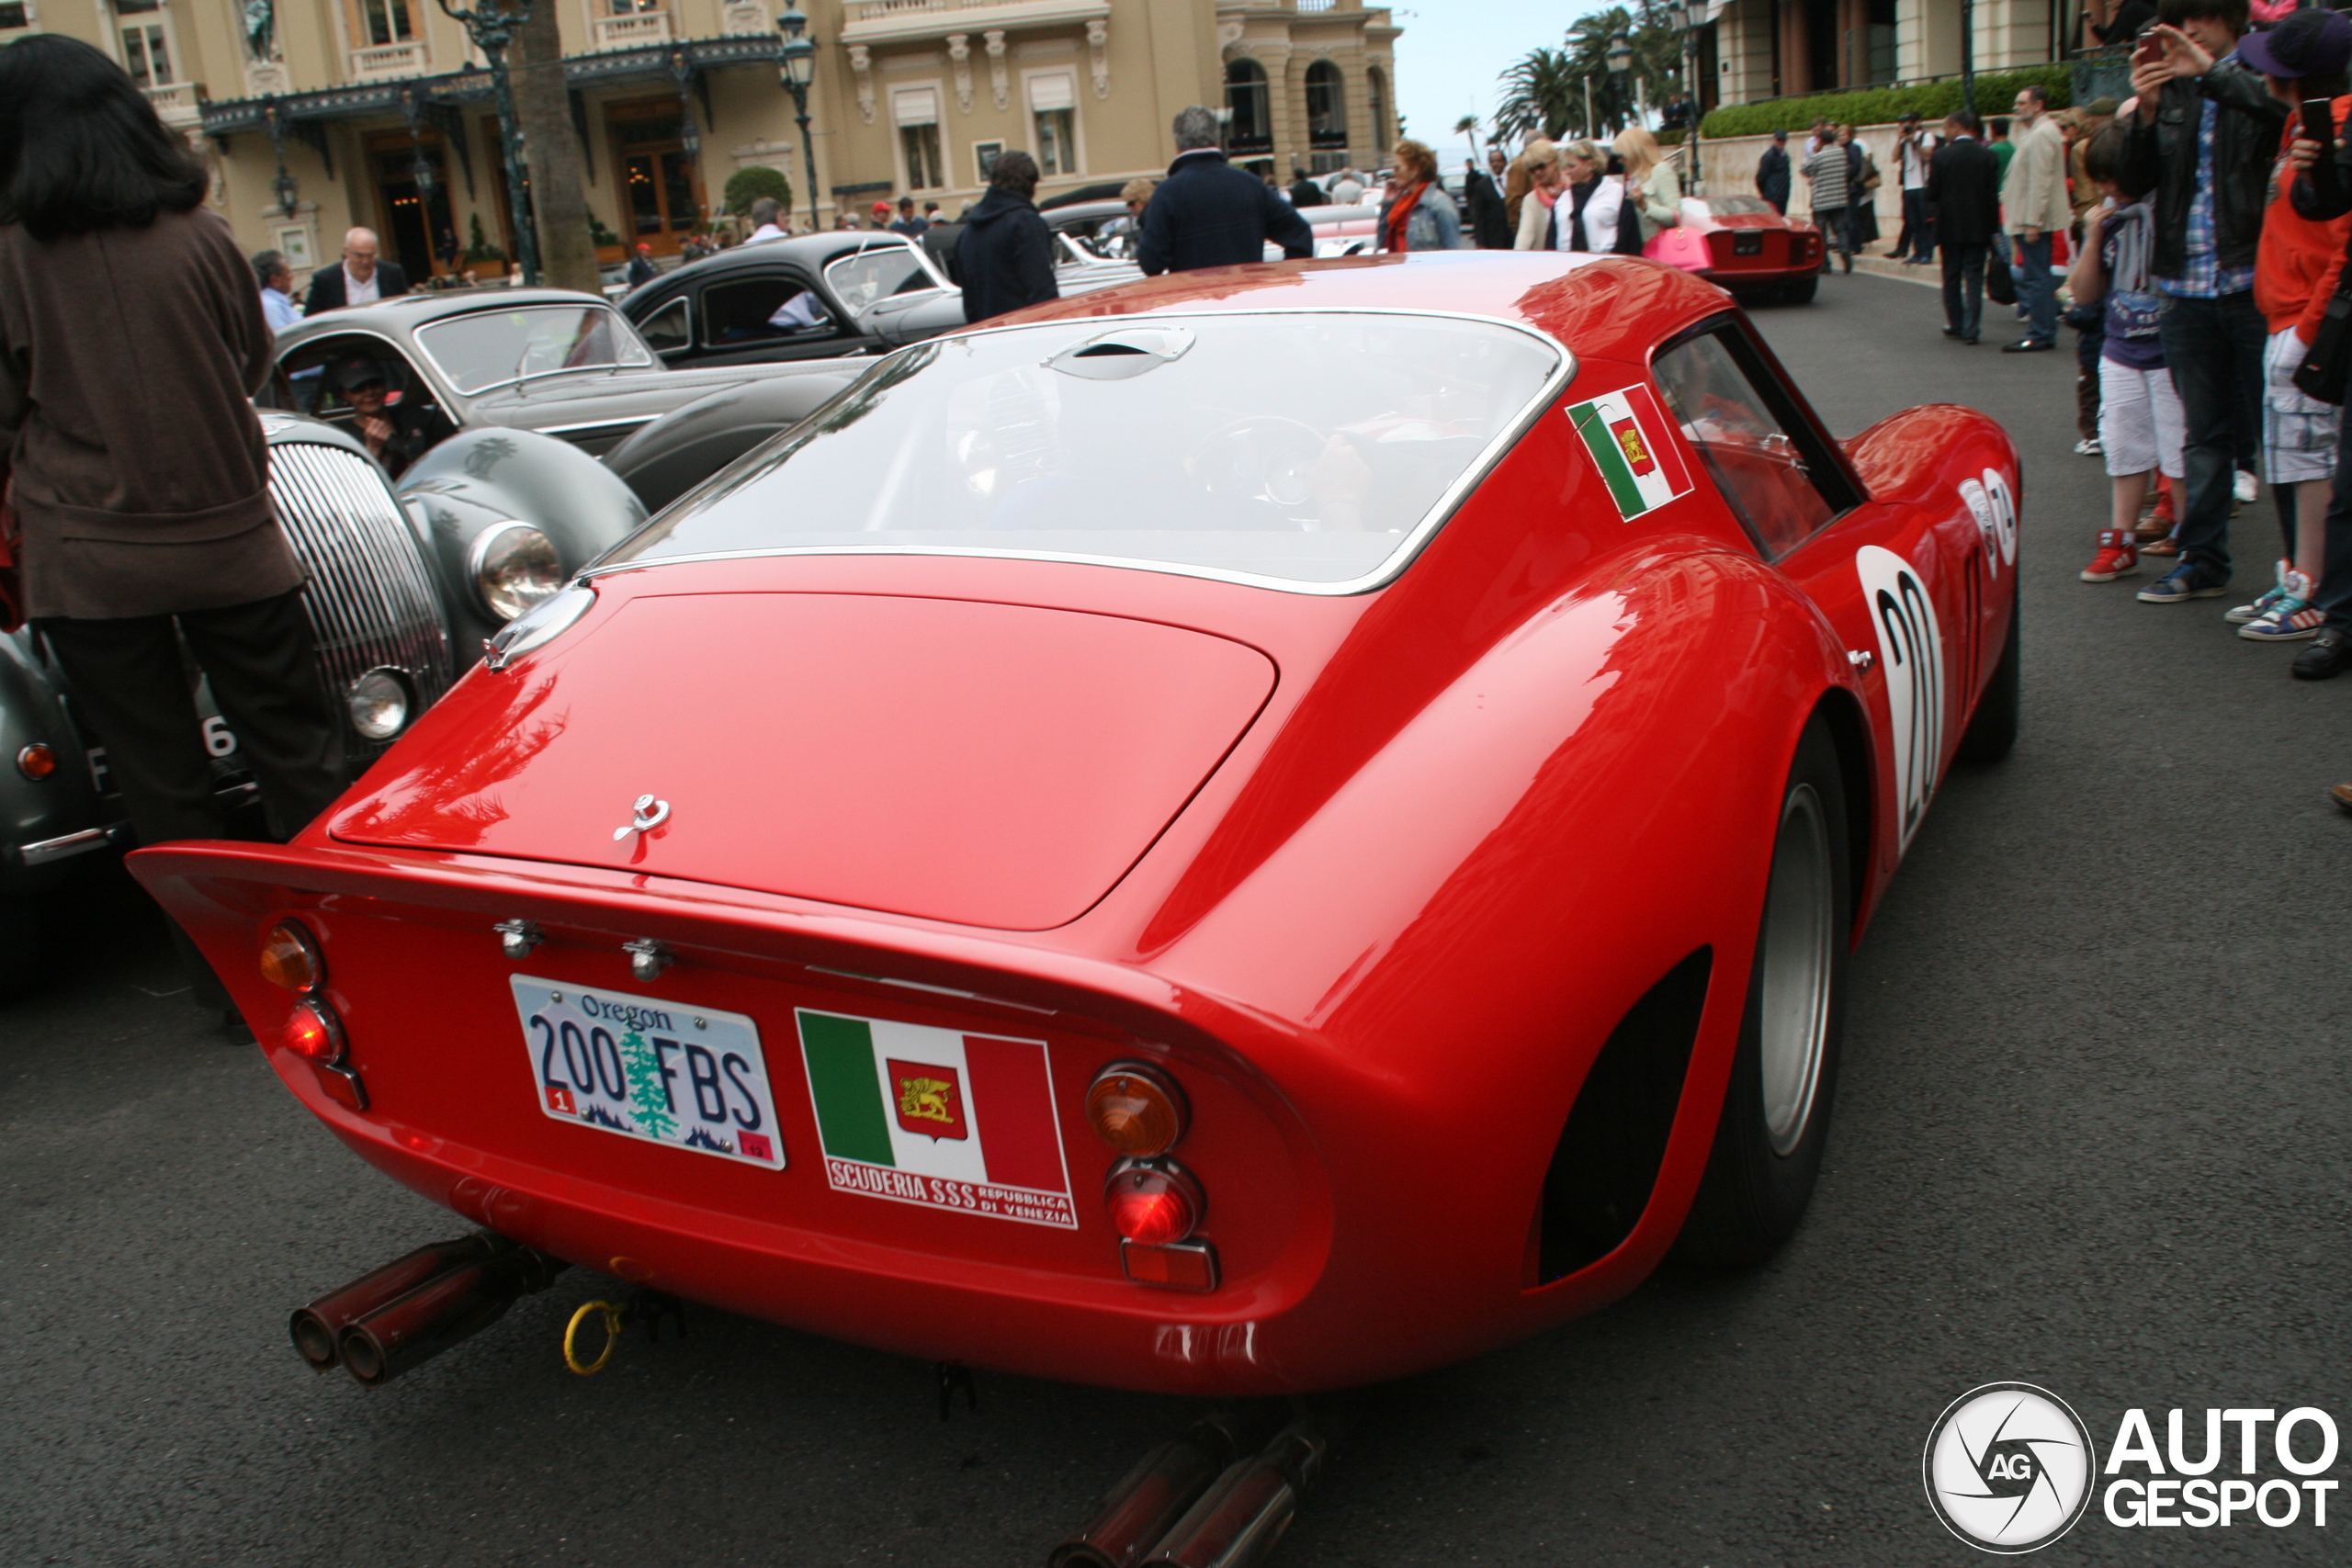 A 250 GTO shows up in Monaco.